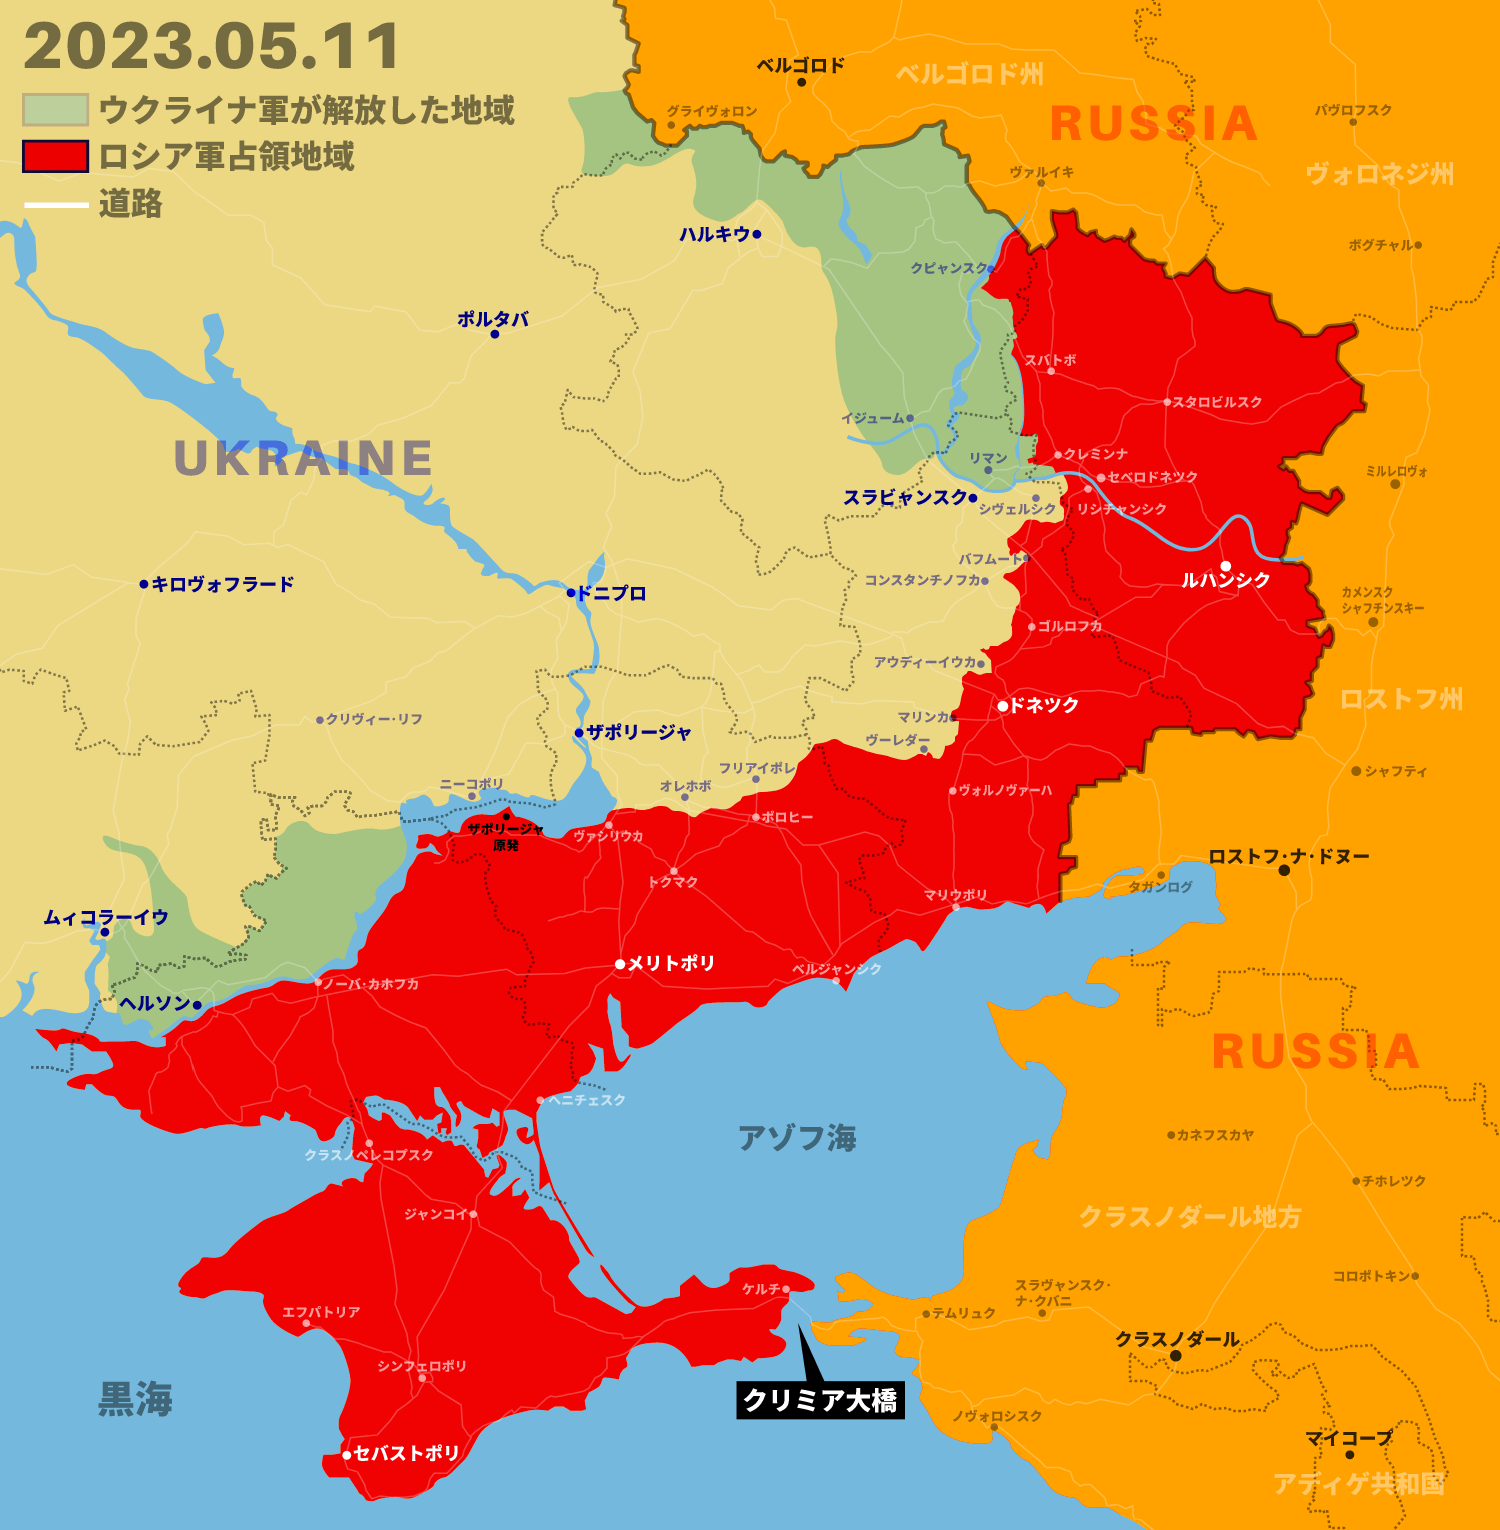 英国がウクライナへのストーム･シャドウ提供を発表、クリミア大橋が攻撃可能に